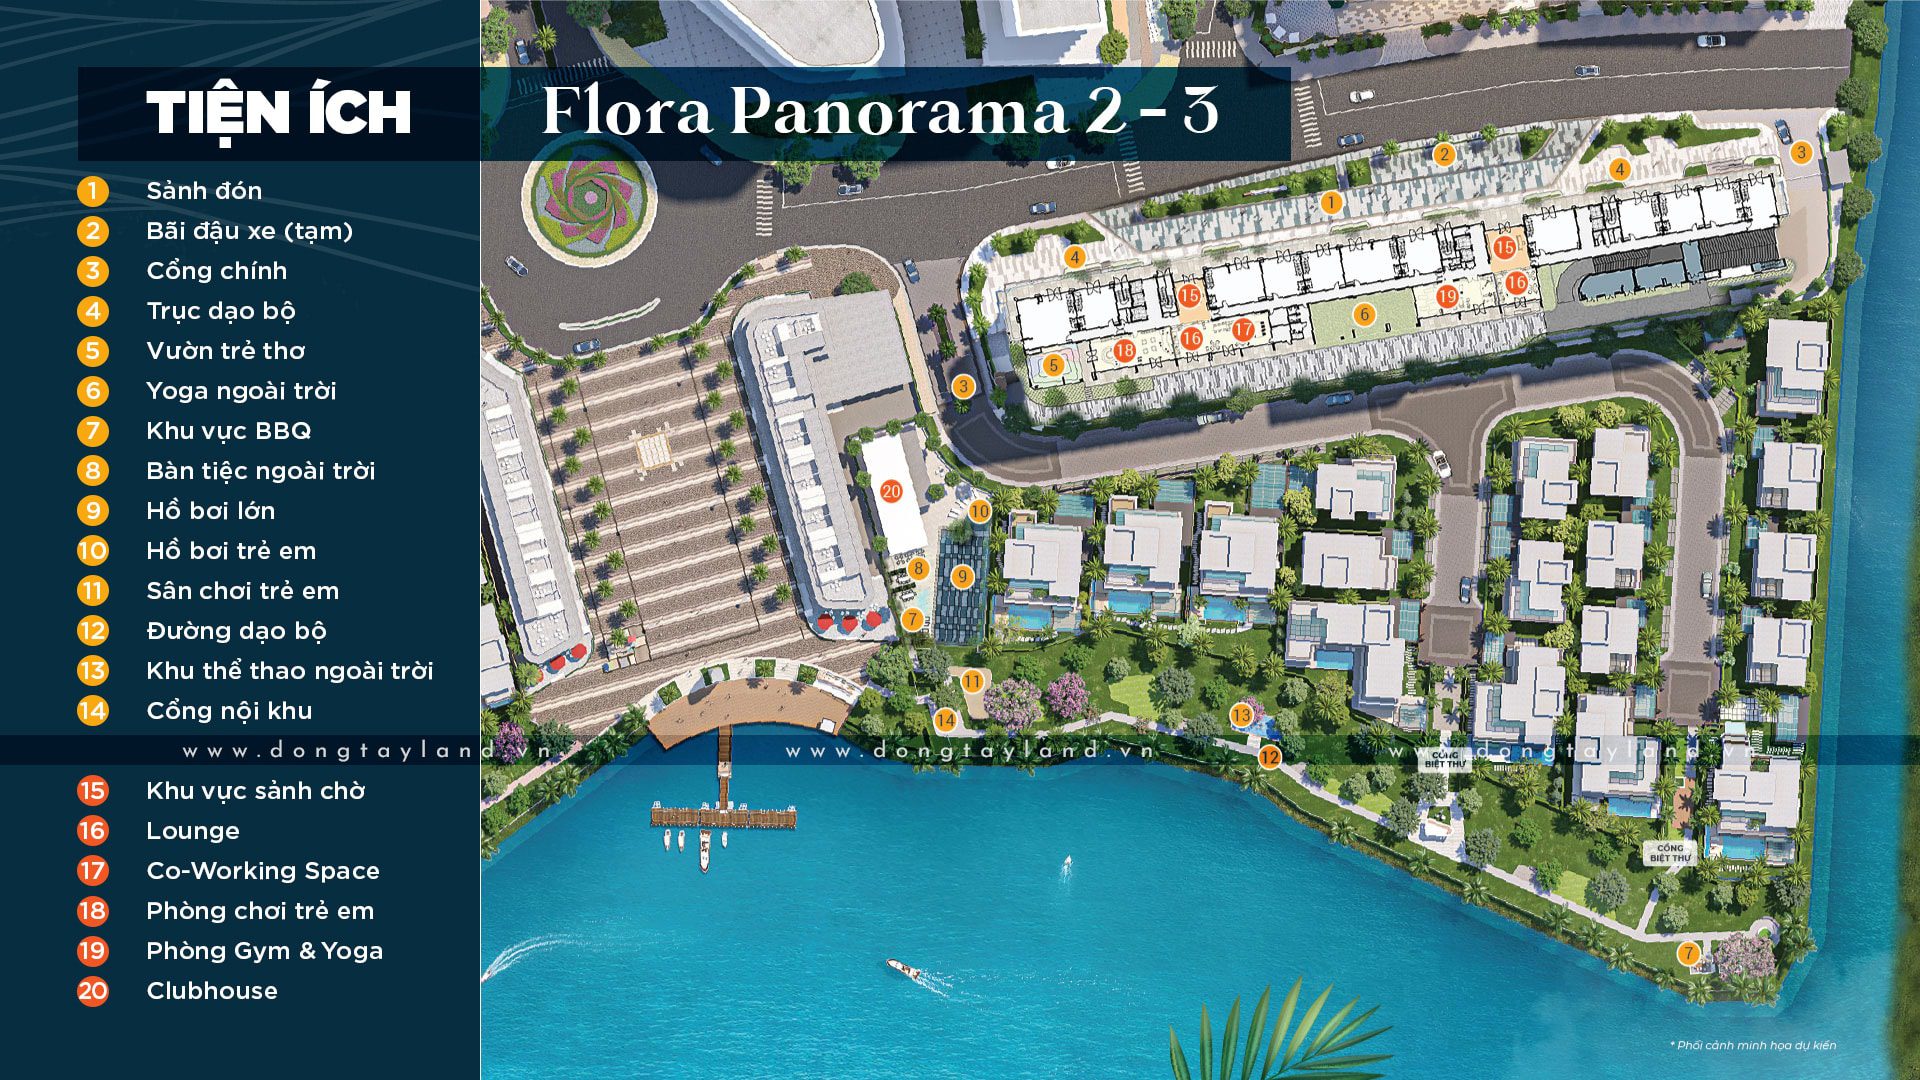 Tiện ích nội khu Flora Panorama 2 - 3